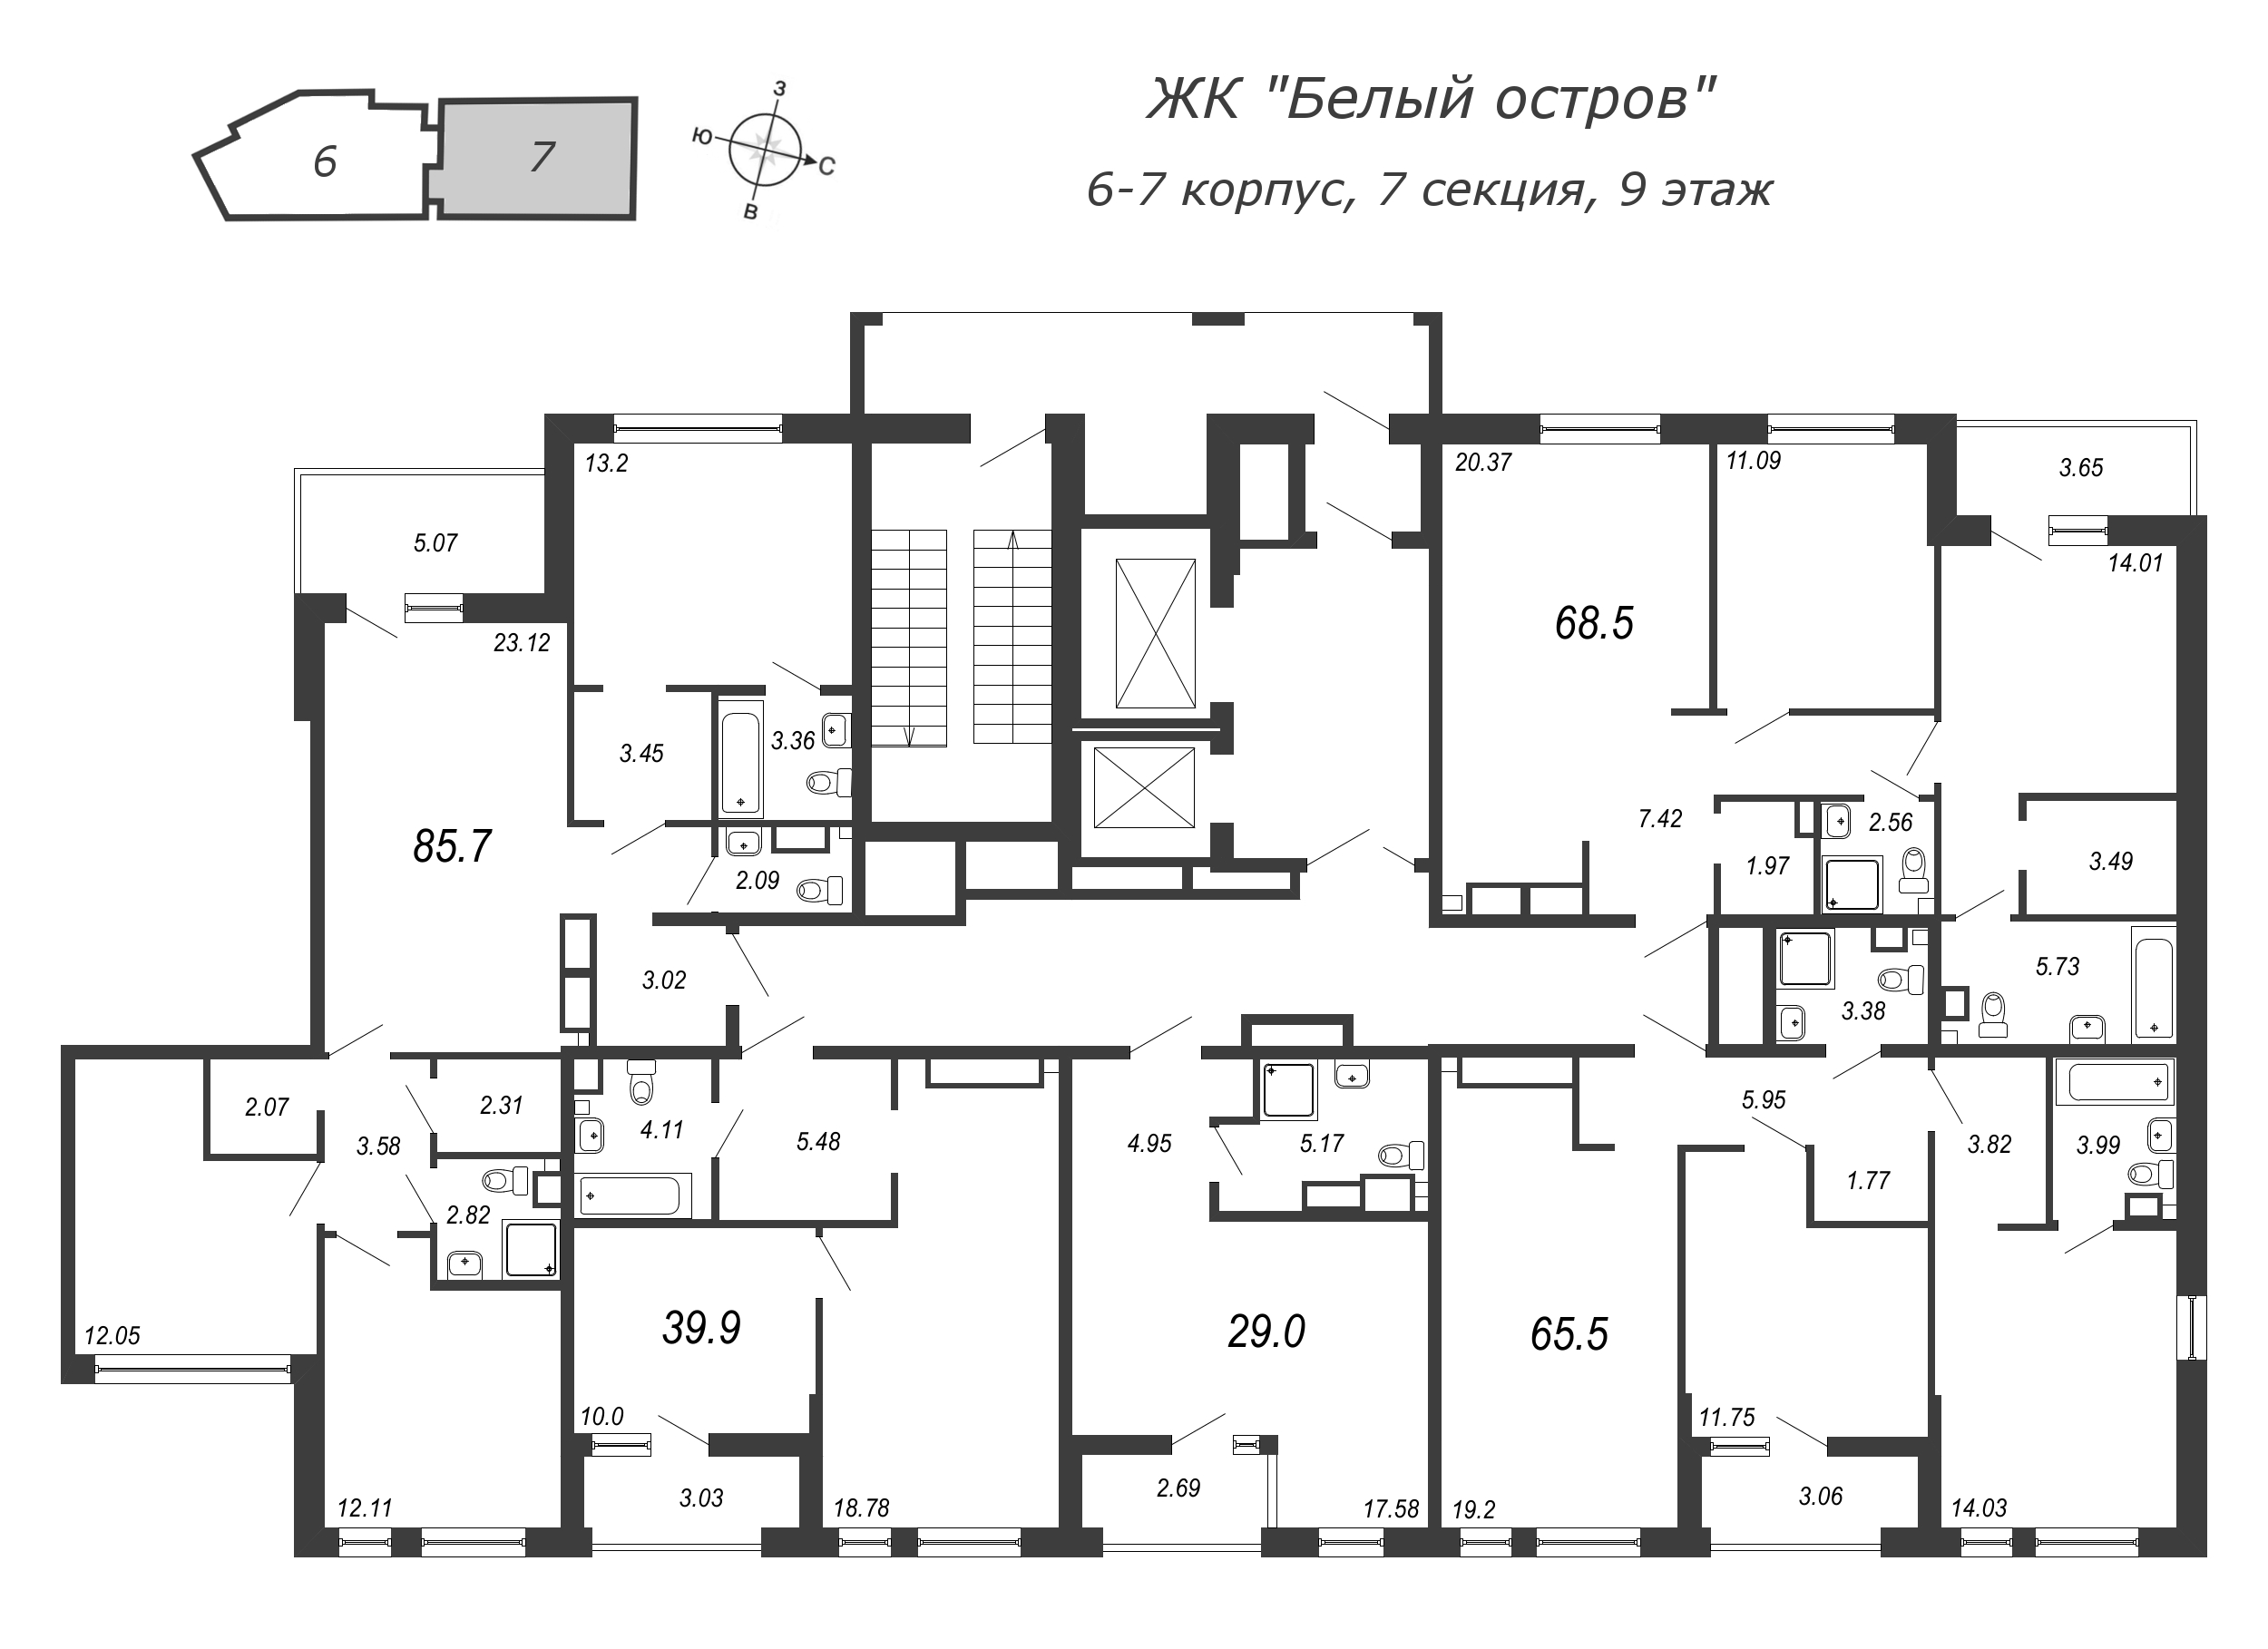 4-комнатная (Евро) квартира, 86.7 м² в ЖК "Белый остров" - планировка этажа